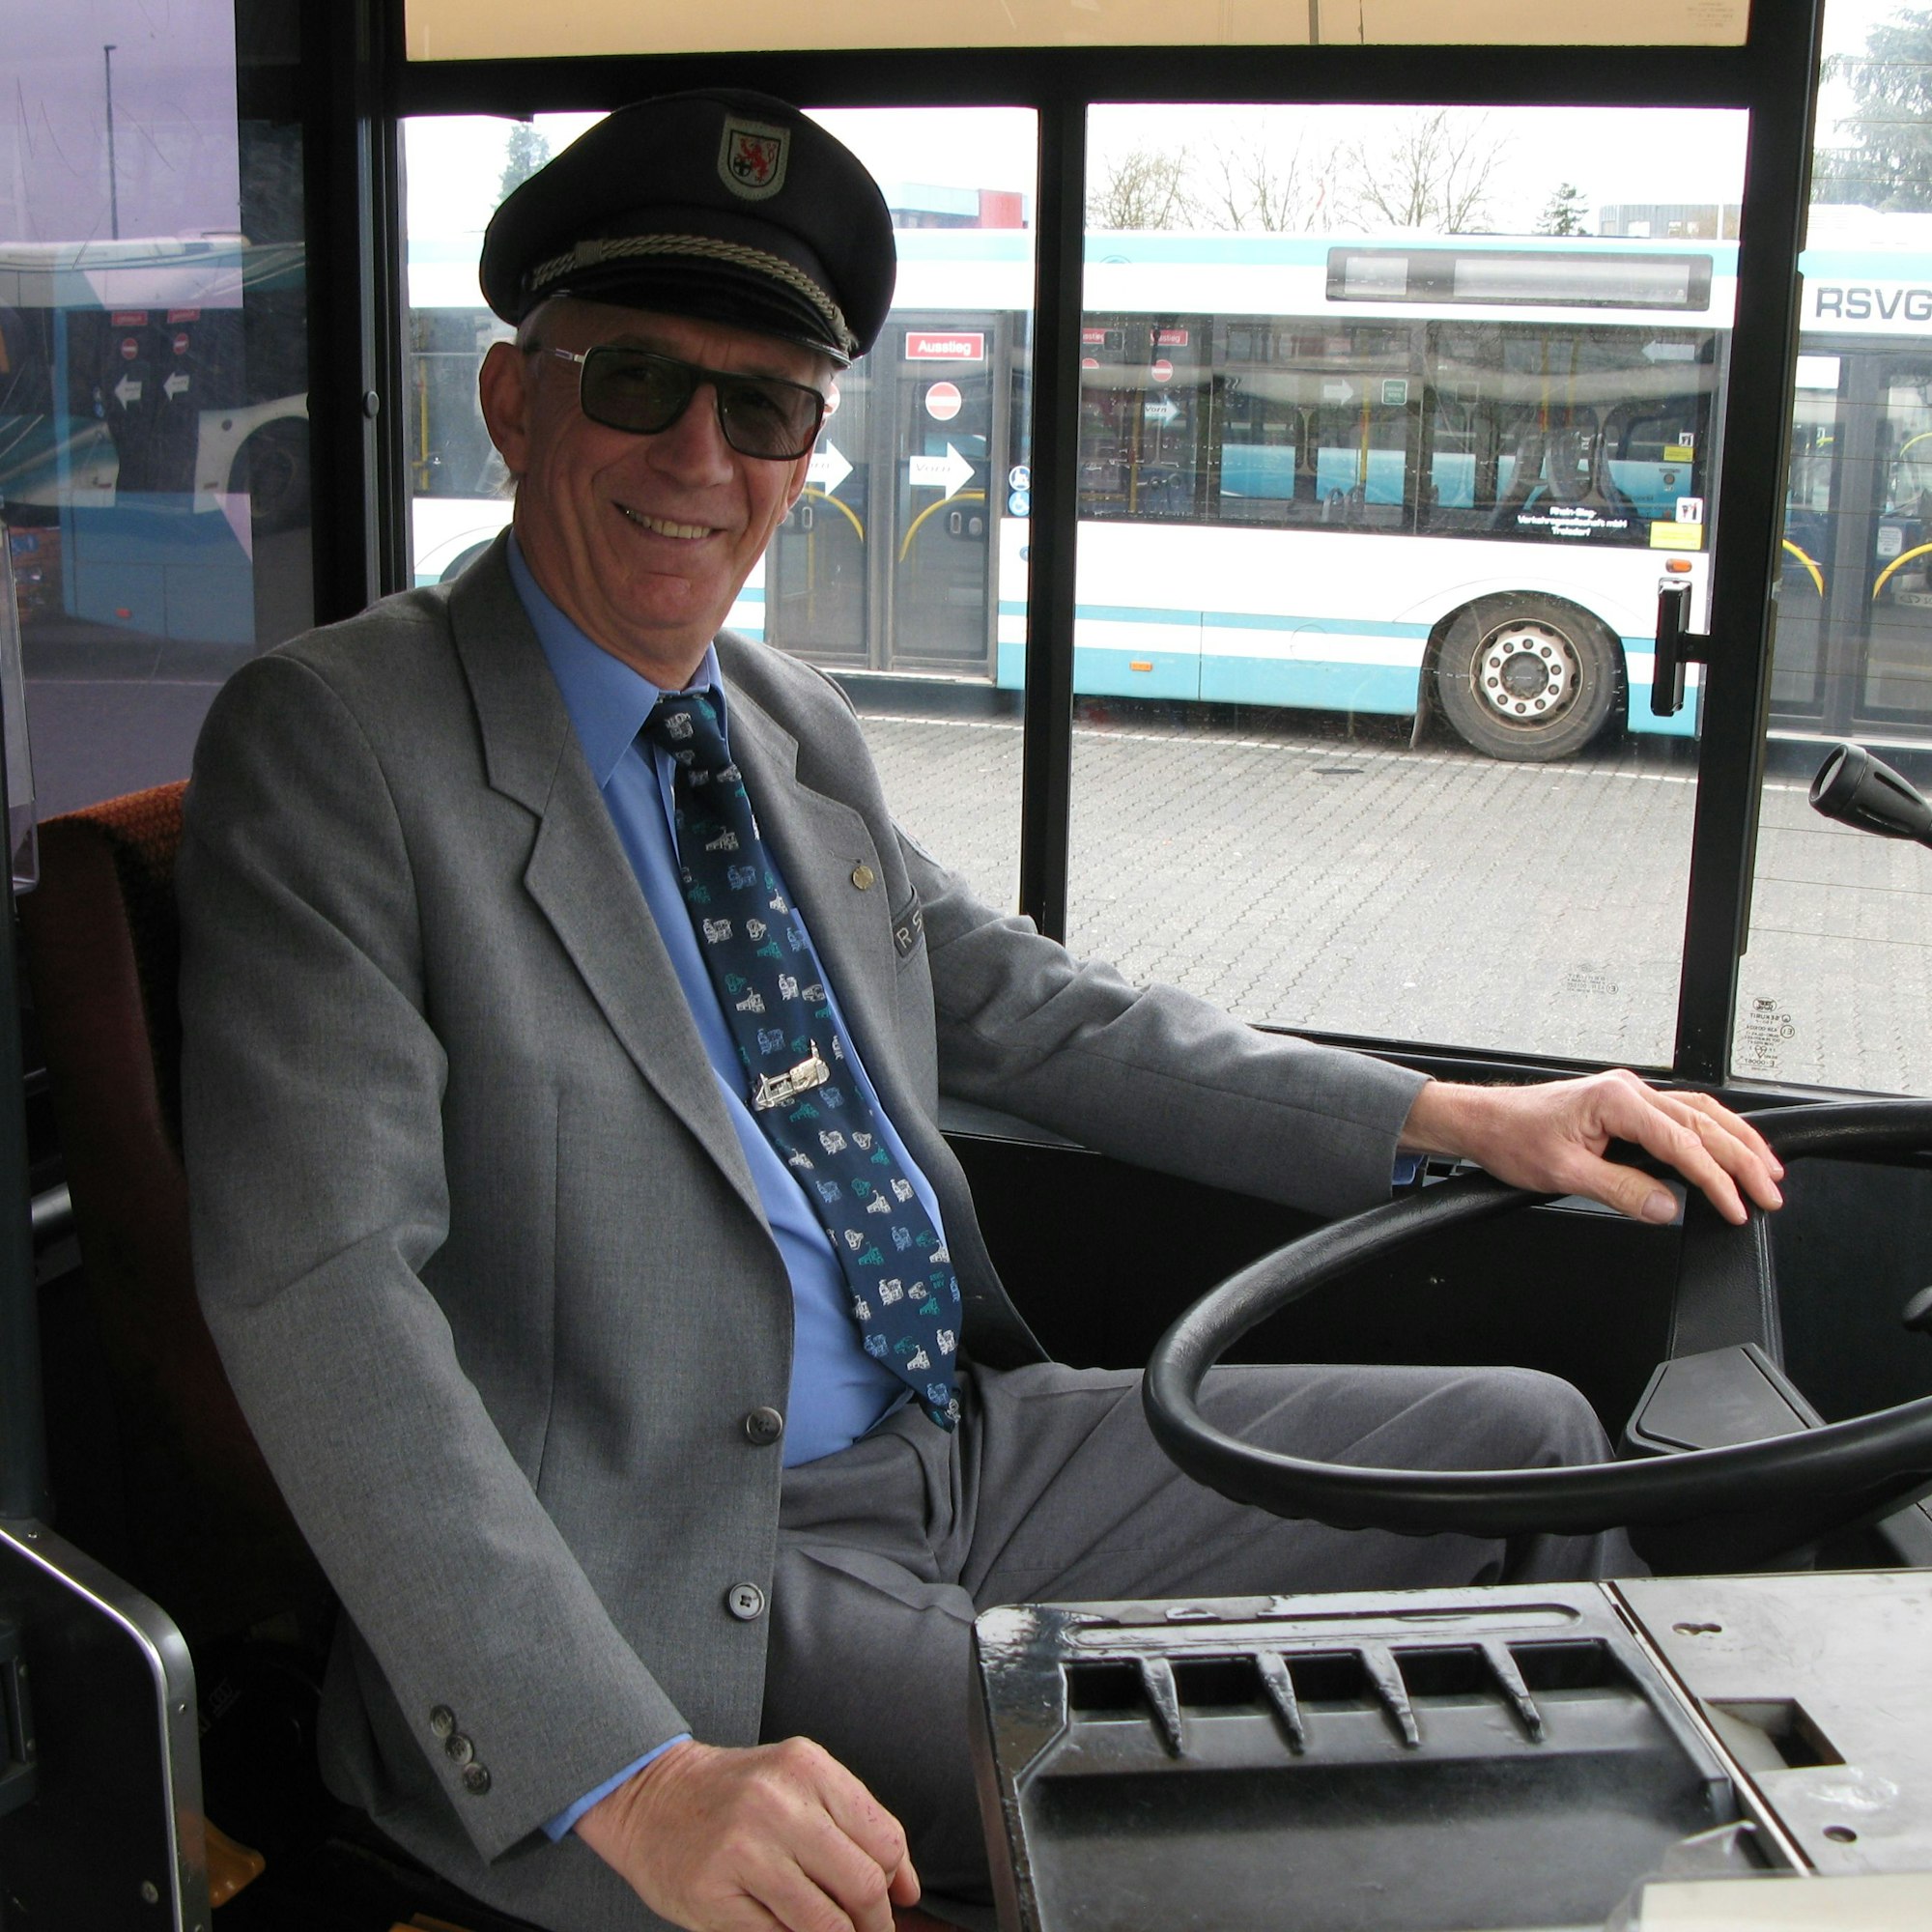 Verkehrsmeister Hans Willi Trost sitzt am Steuer des Oldtimers, er trägt seine alte Busfahrer-Uniform mit grauer Hose, grauem Jackett, blauem Hemd, Krawatte und Schirmmütze.